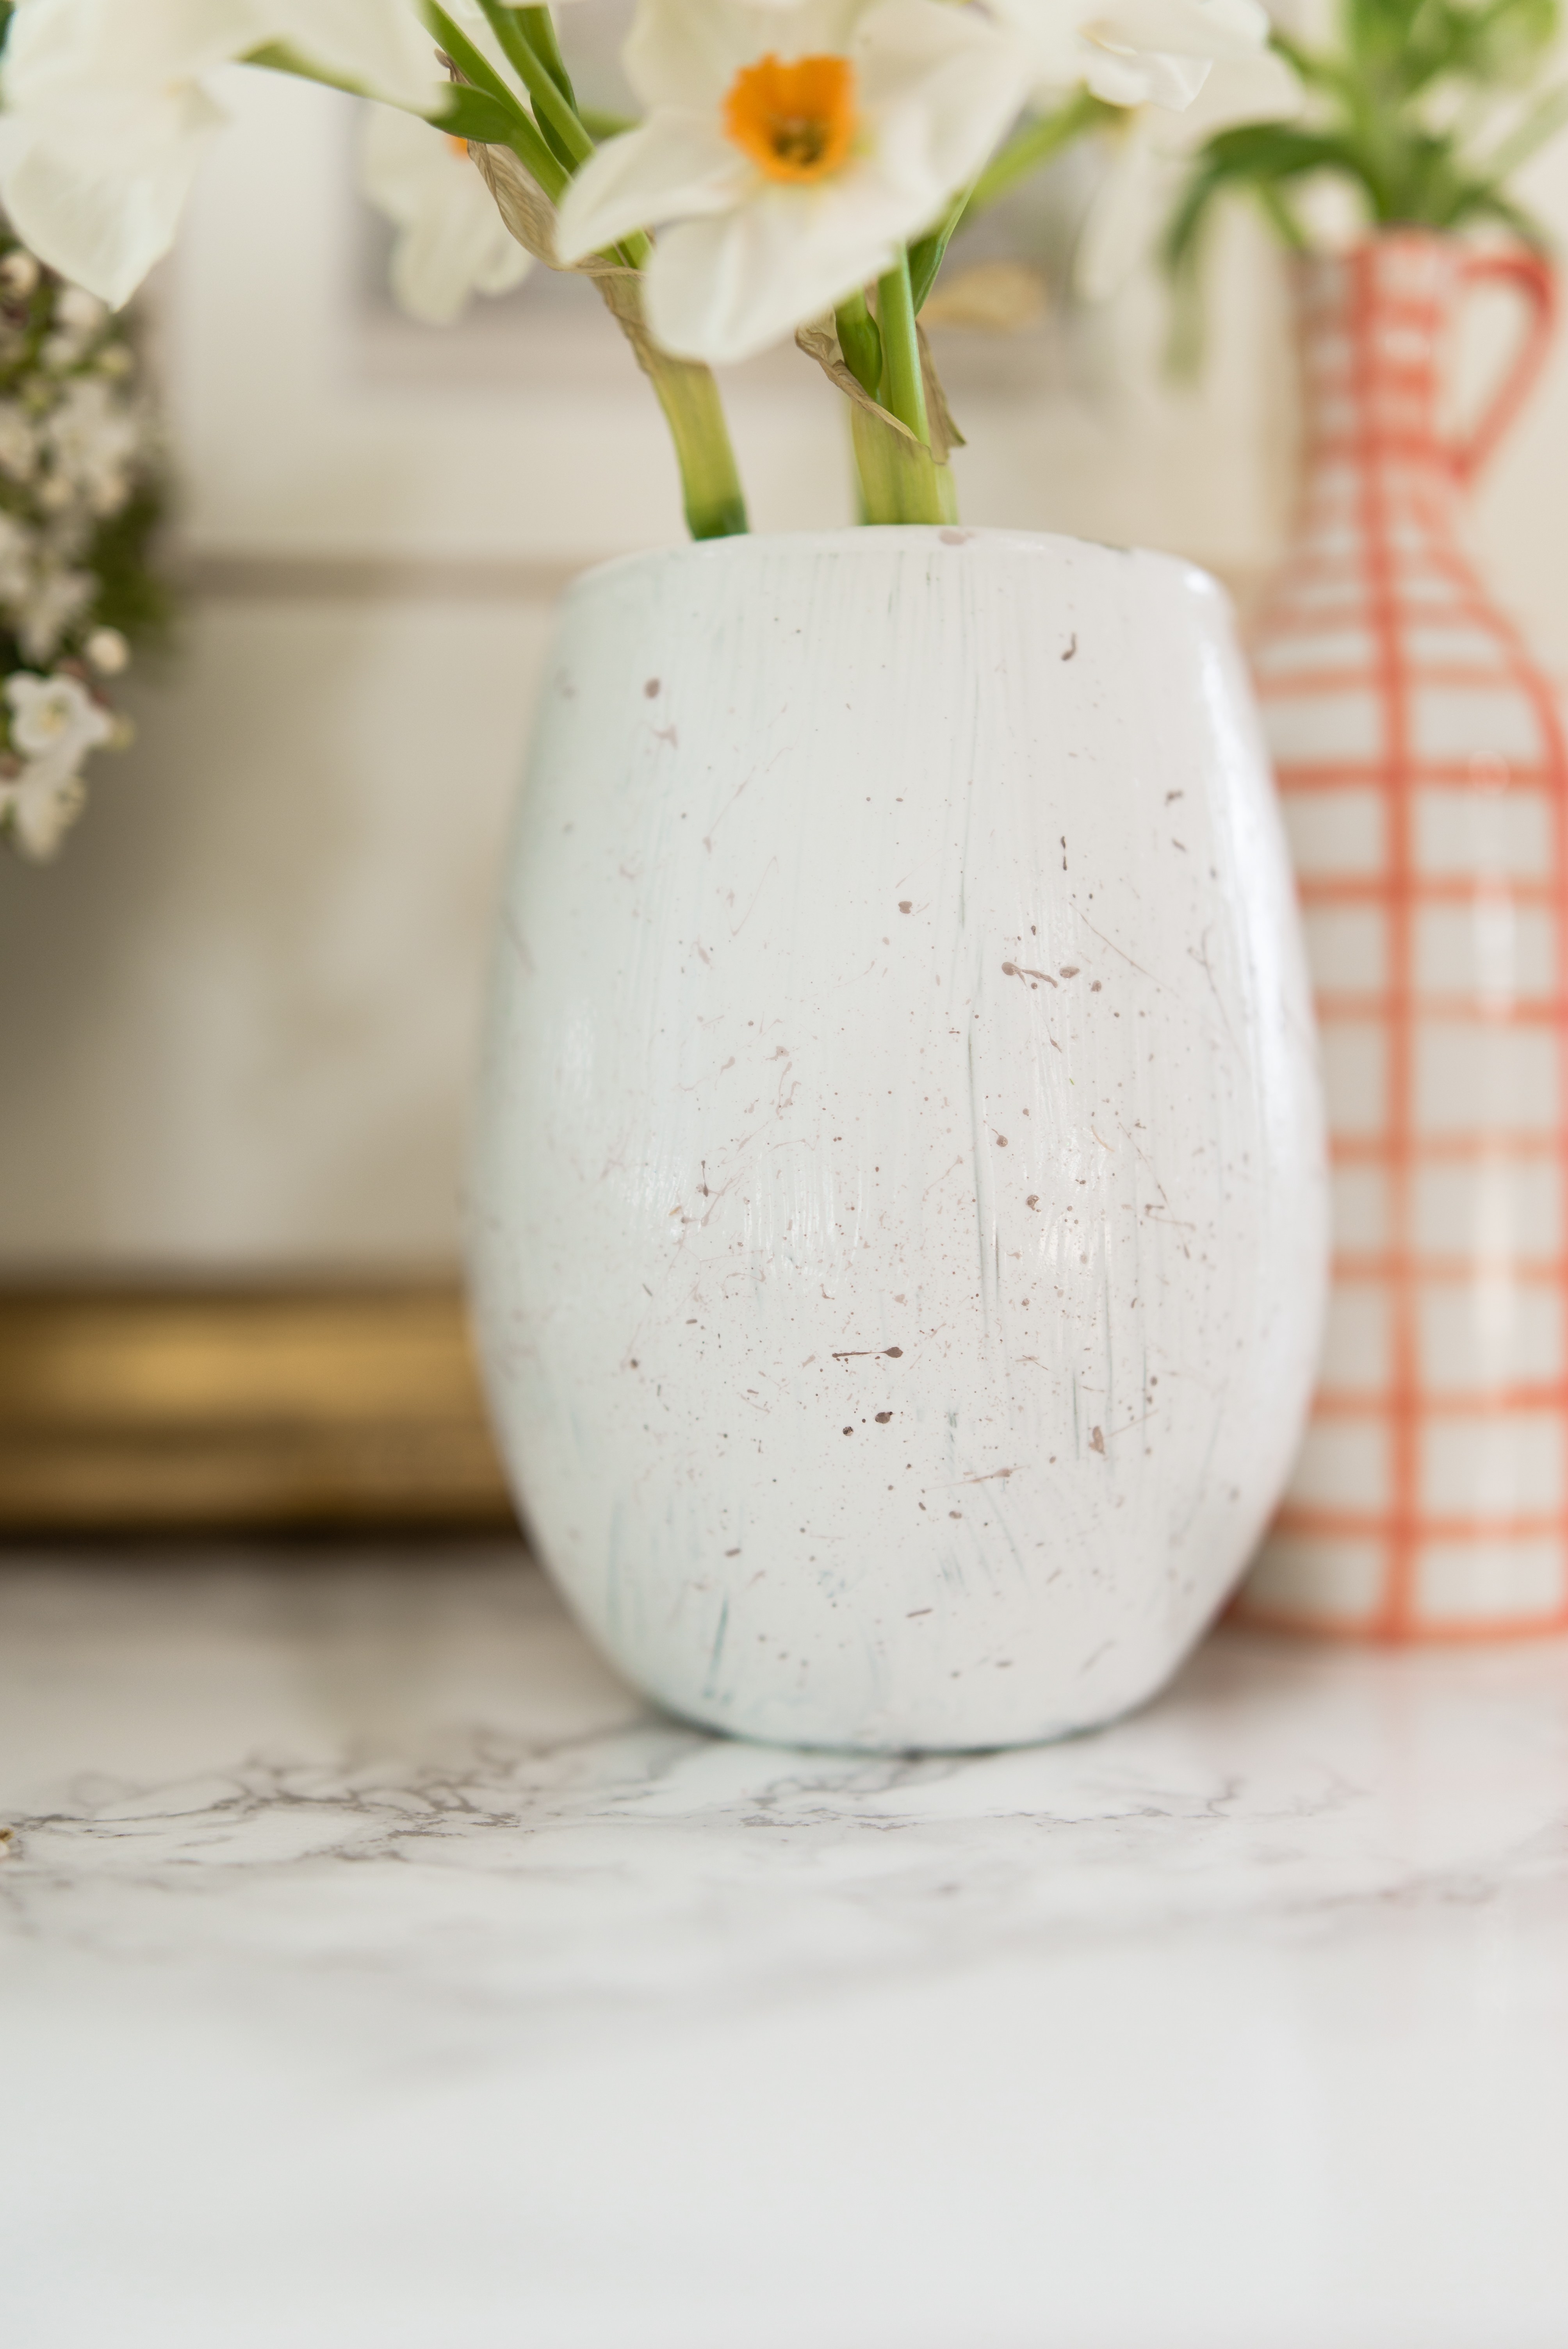 DIY Easter egg inspired pastel vases (via threadsandblooms.com)